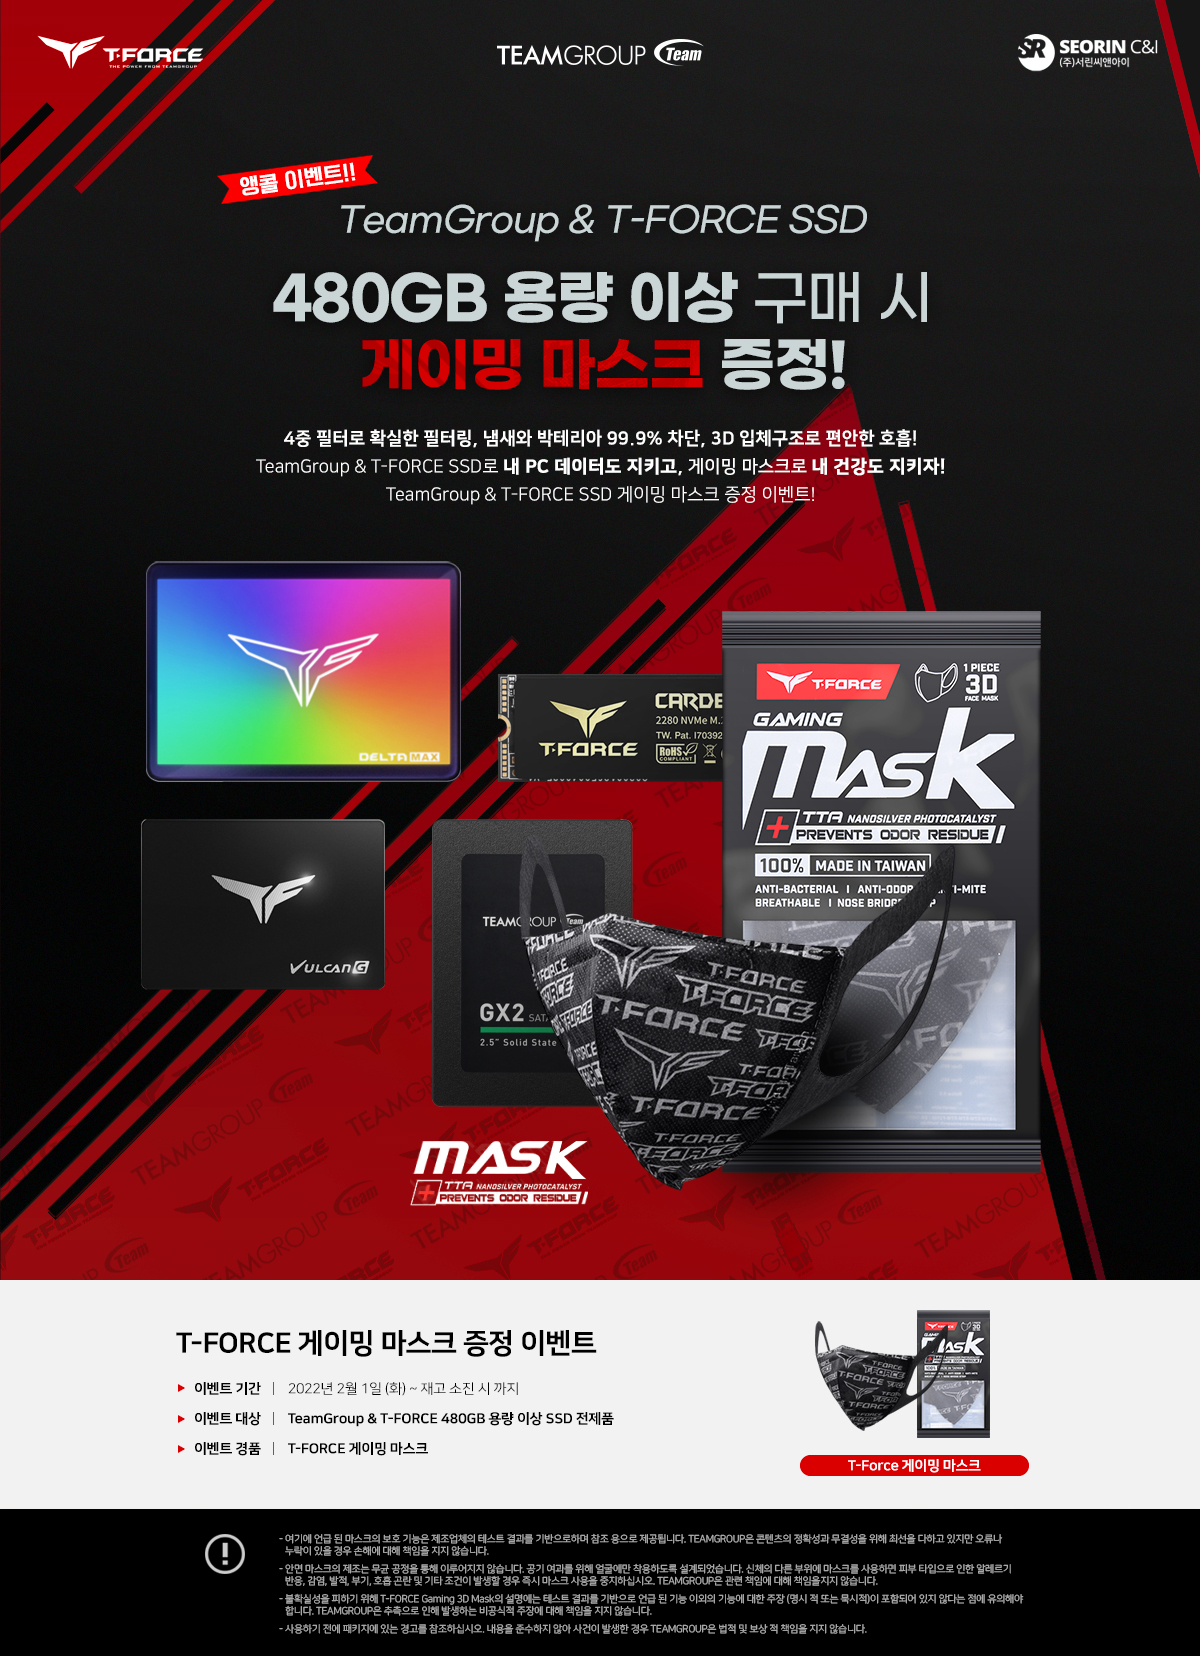 앵콜 이벤트! 팀그룹&티포스 480GB 이상 용량 SSD 구매자 대상 게이밍 마스크 증정 이벤트!